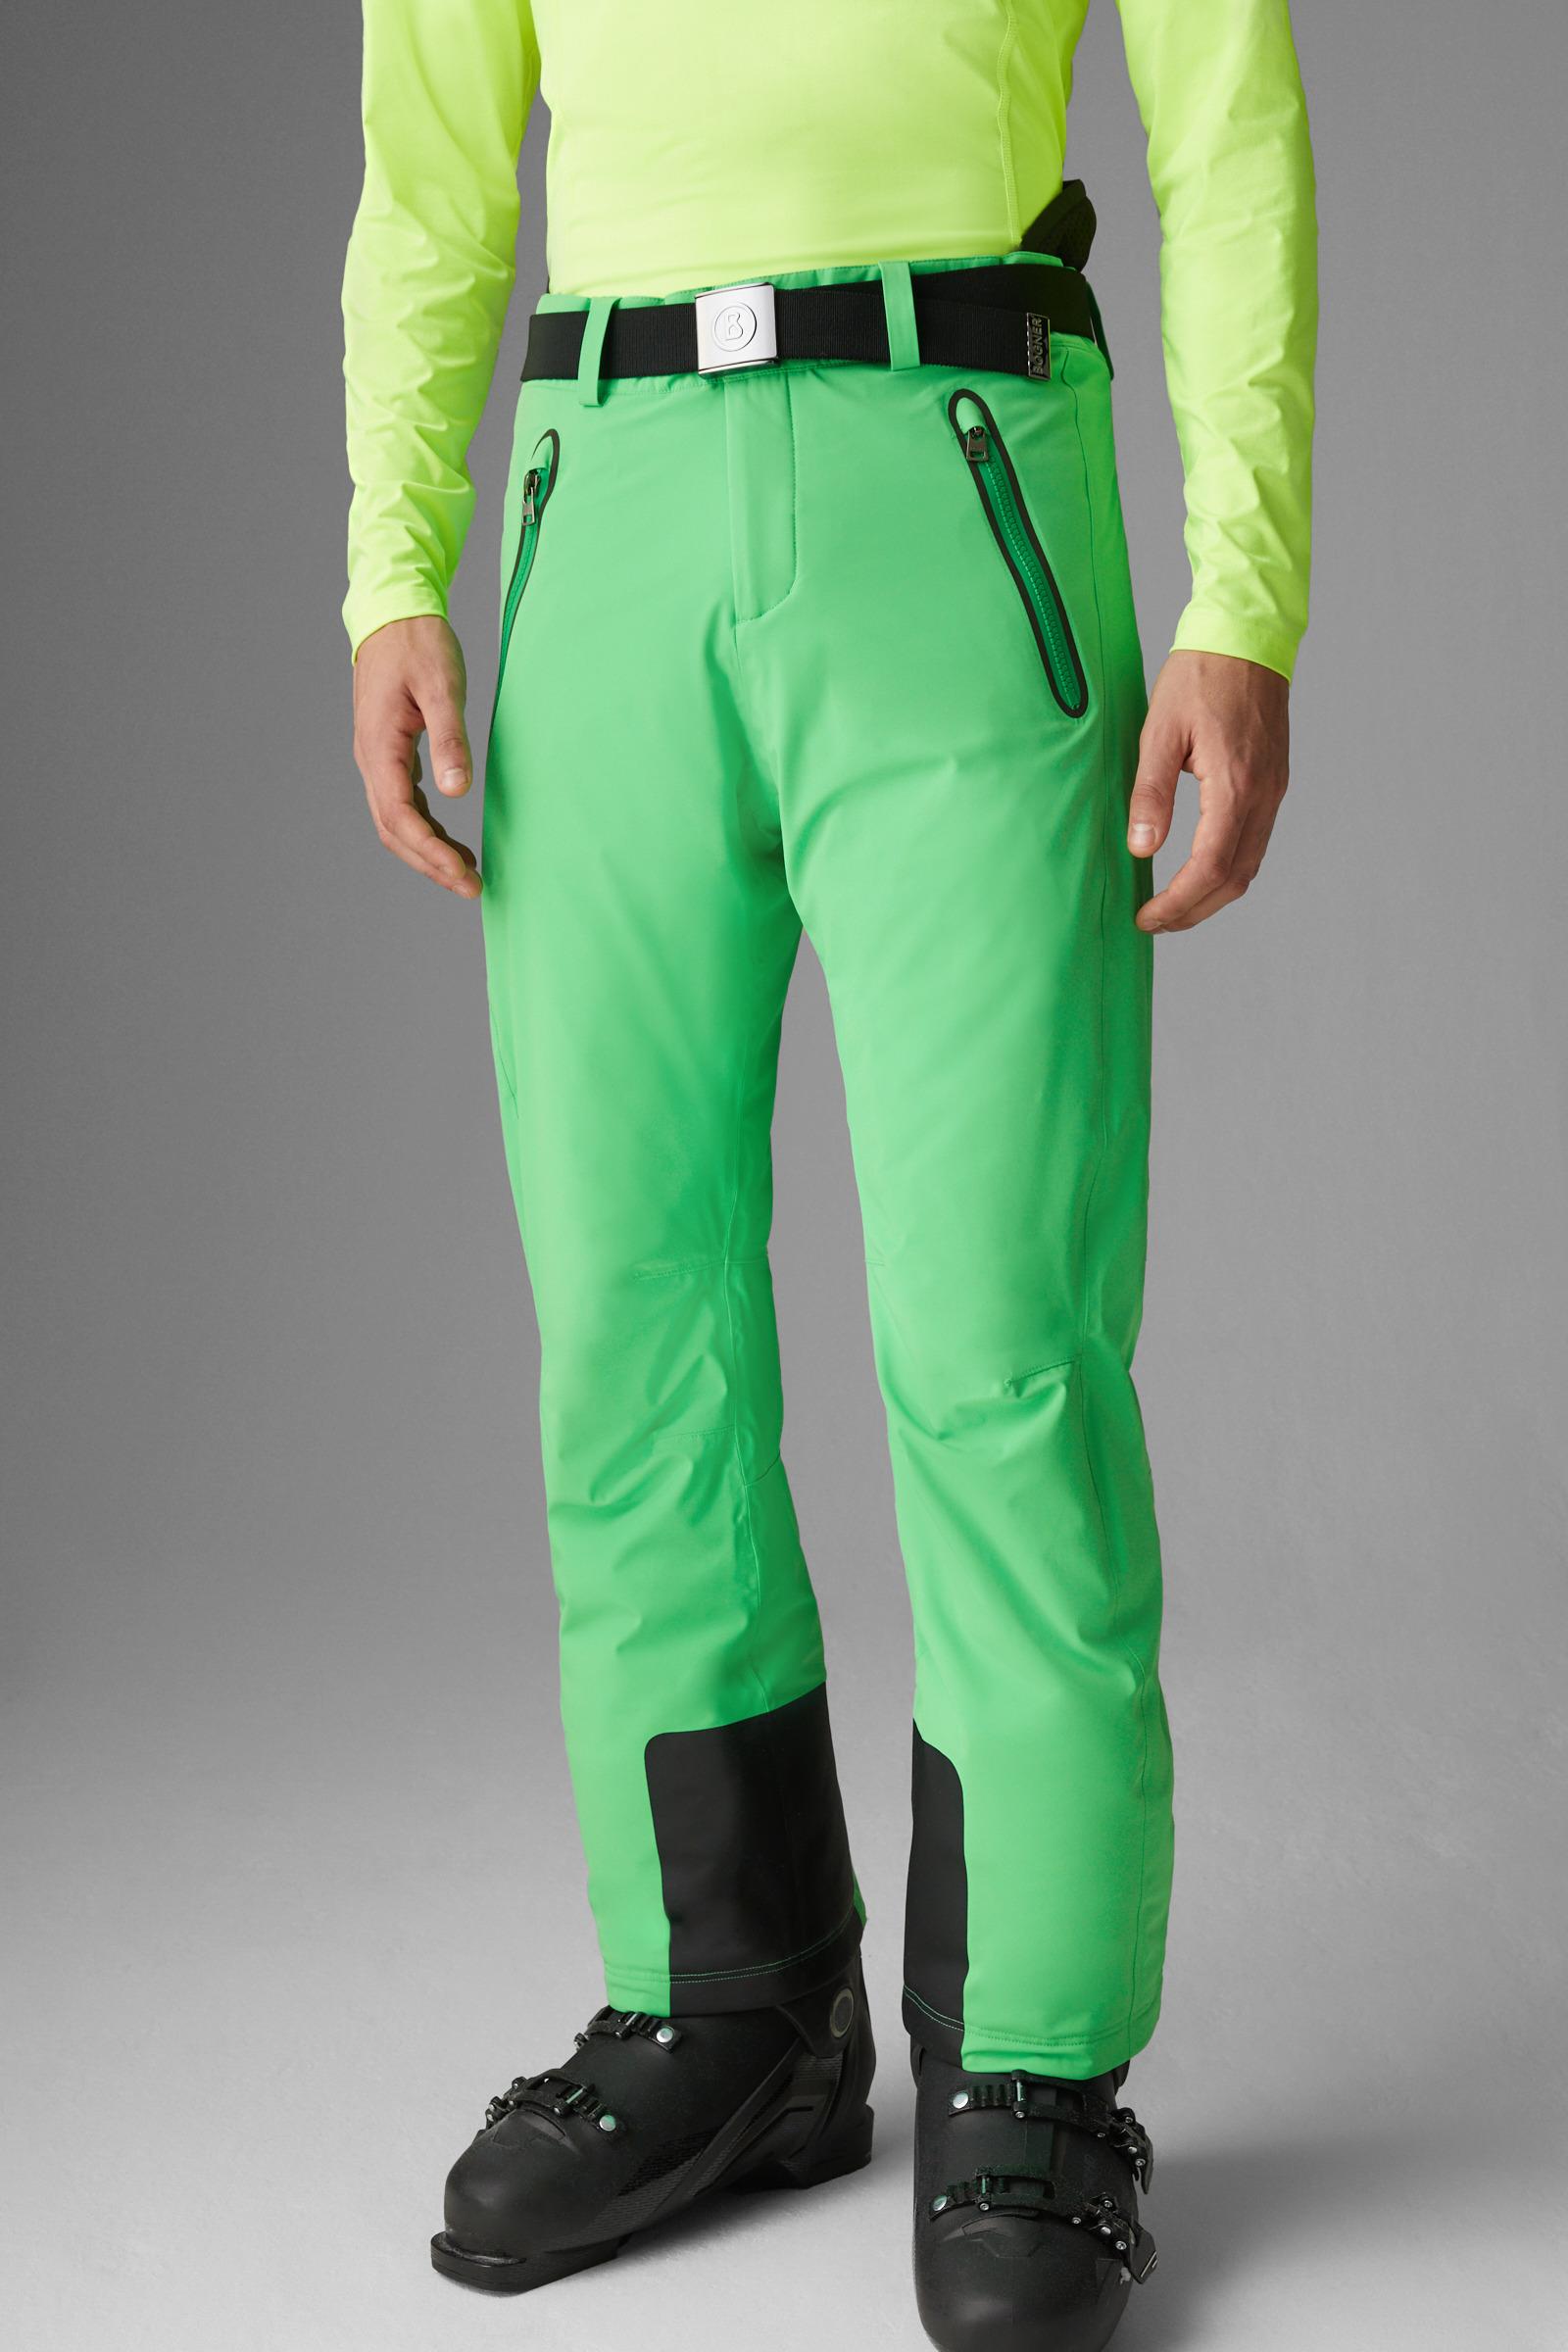 Bogner Thore Ski Trousers in Green for Men